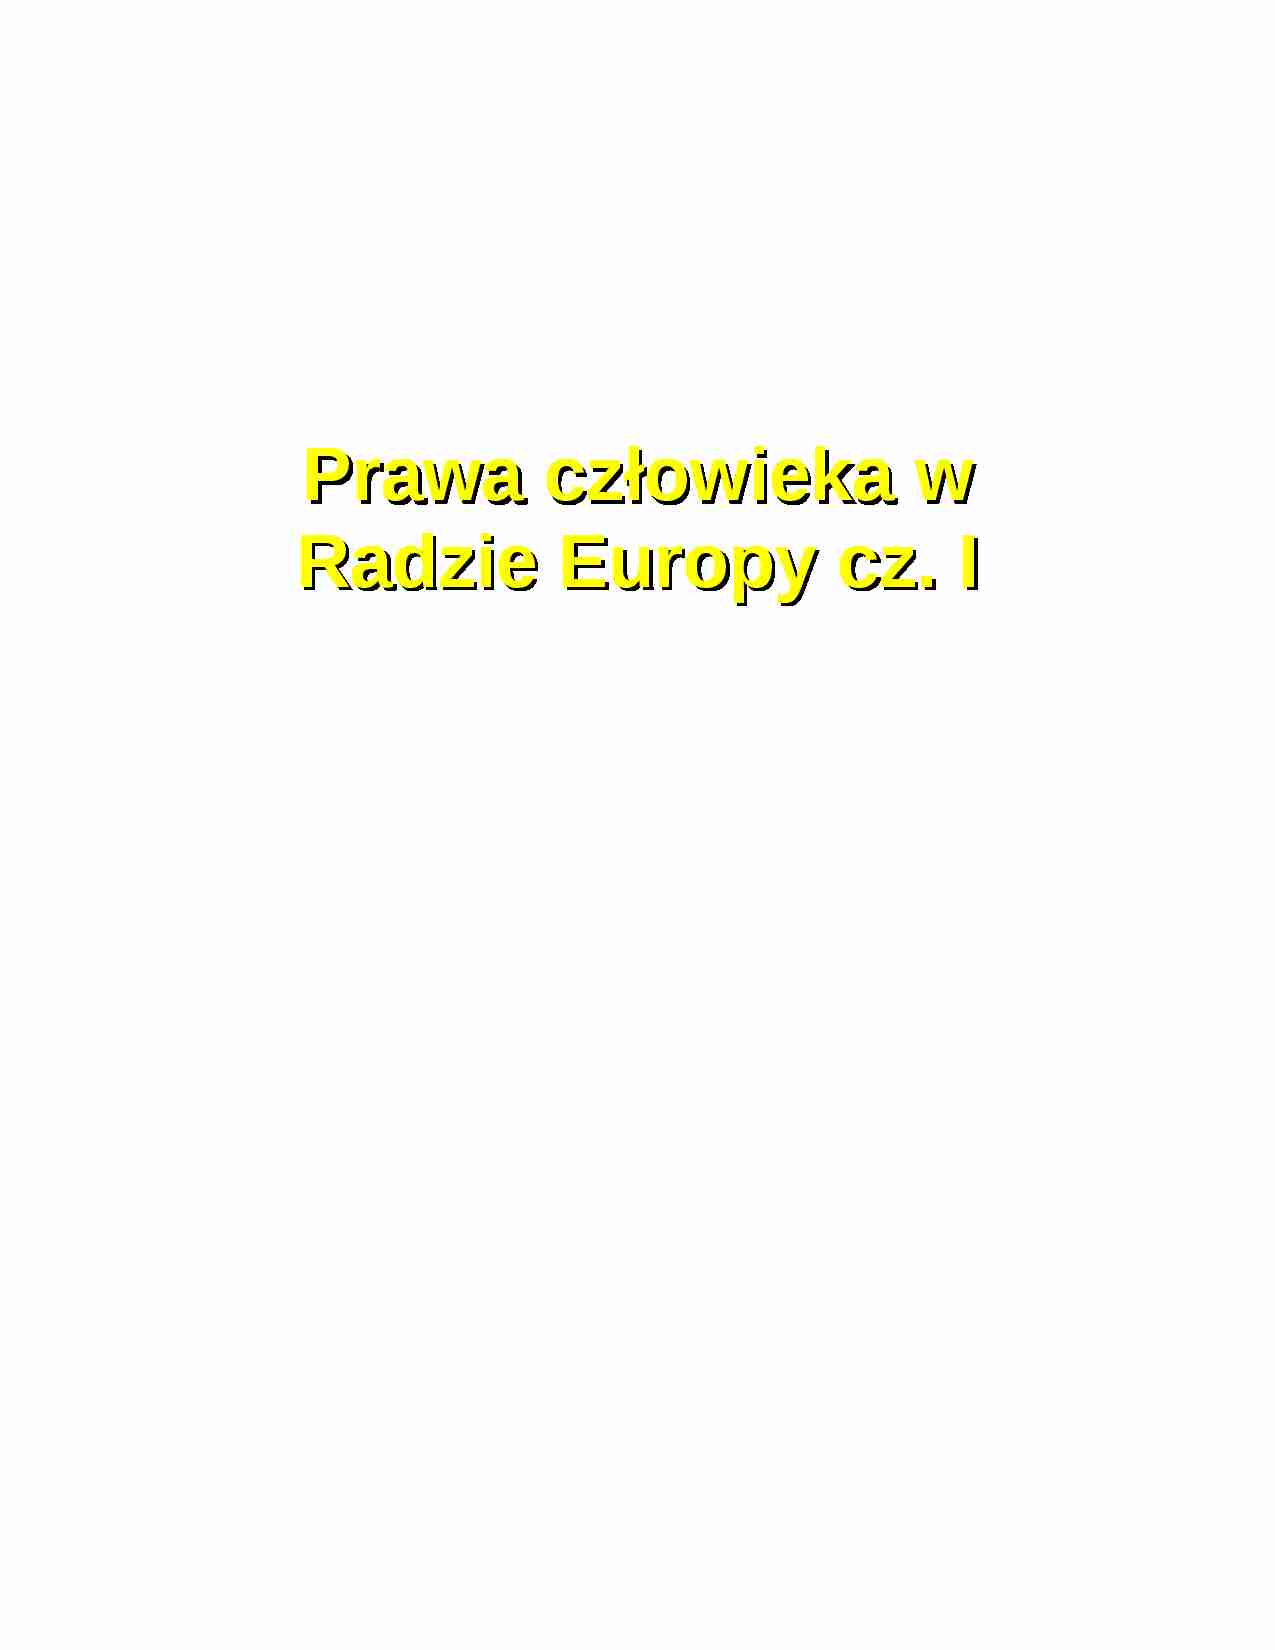 Prawa człowieka w Radzie Europy cz. I-opracowanie - strona 1